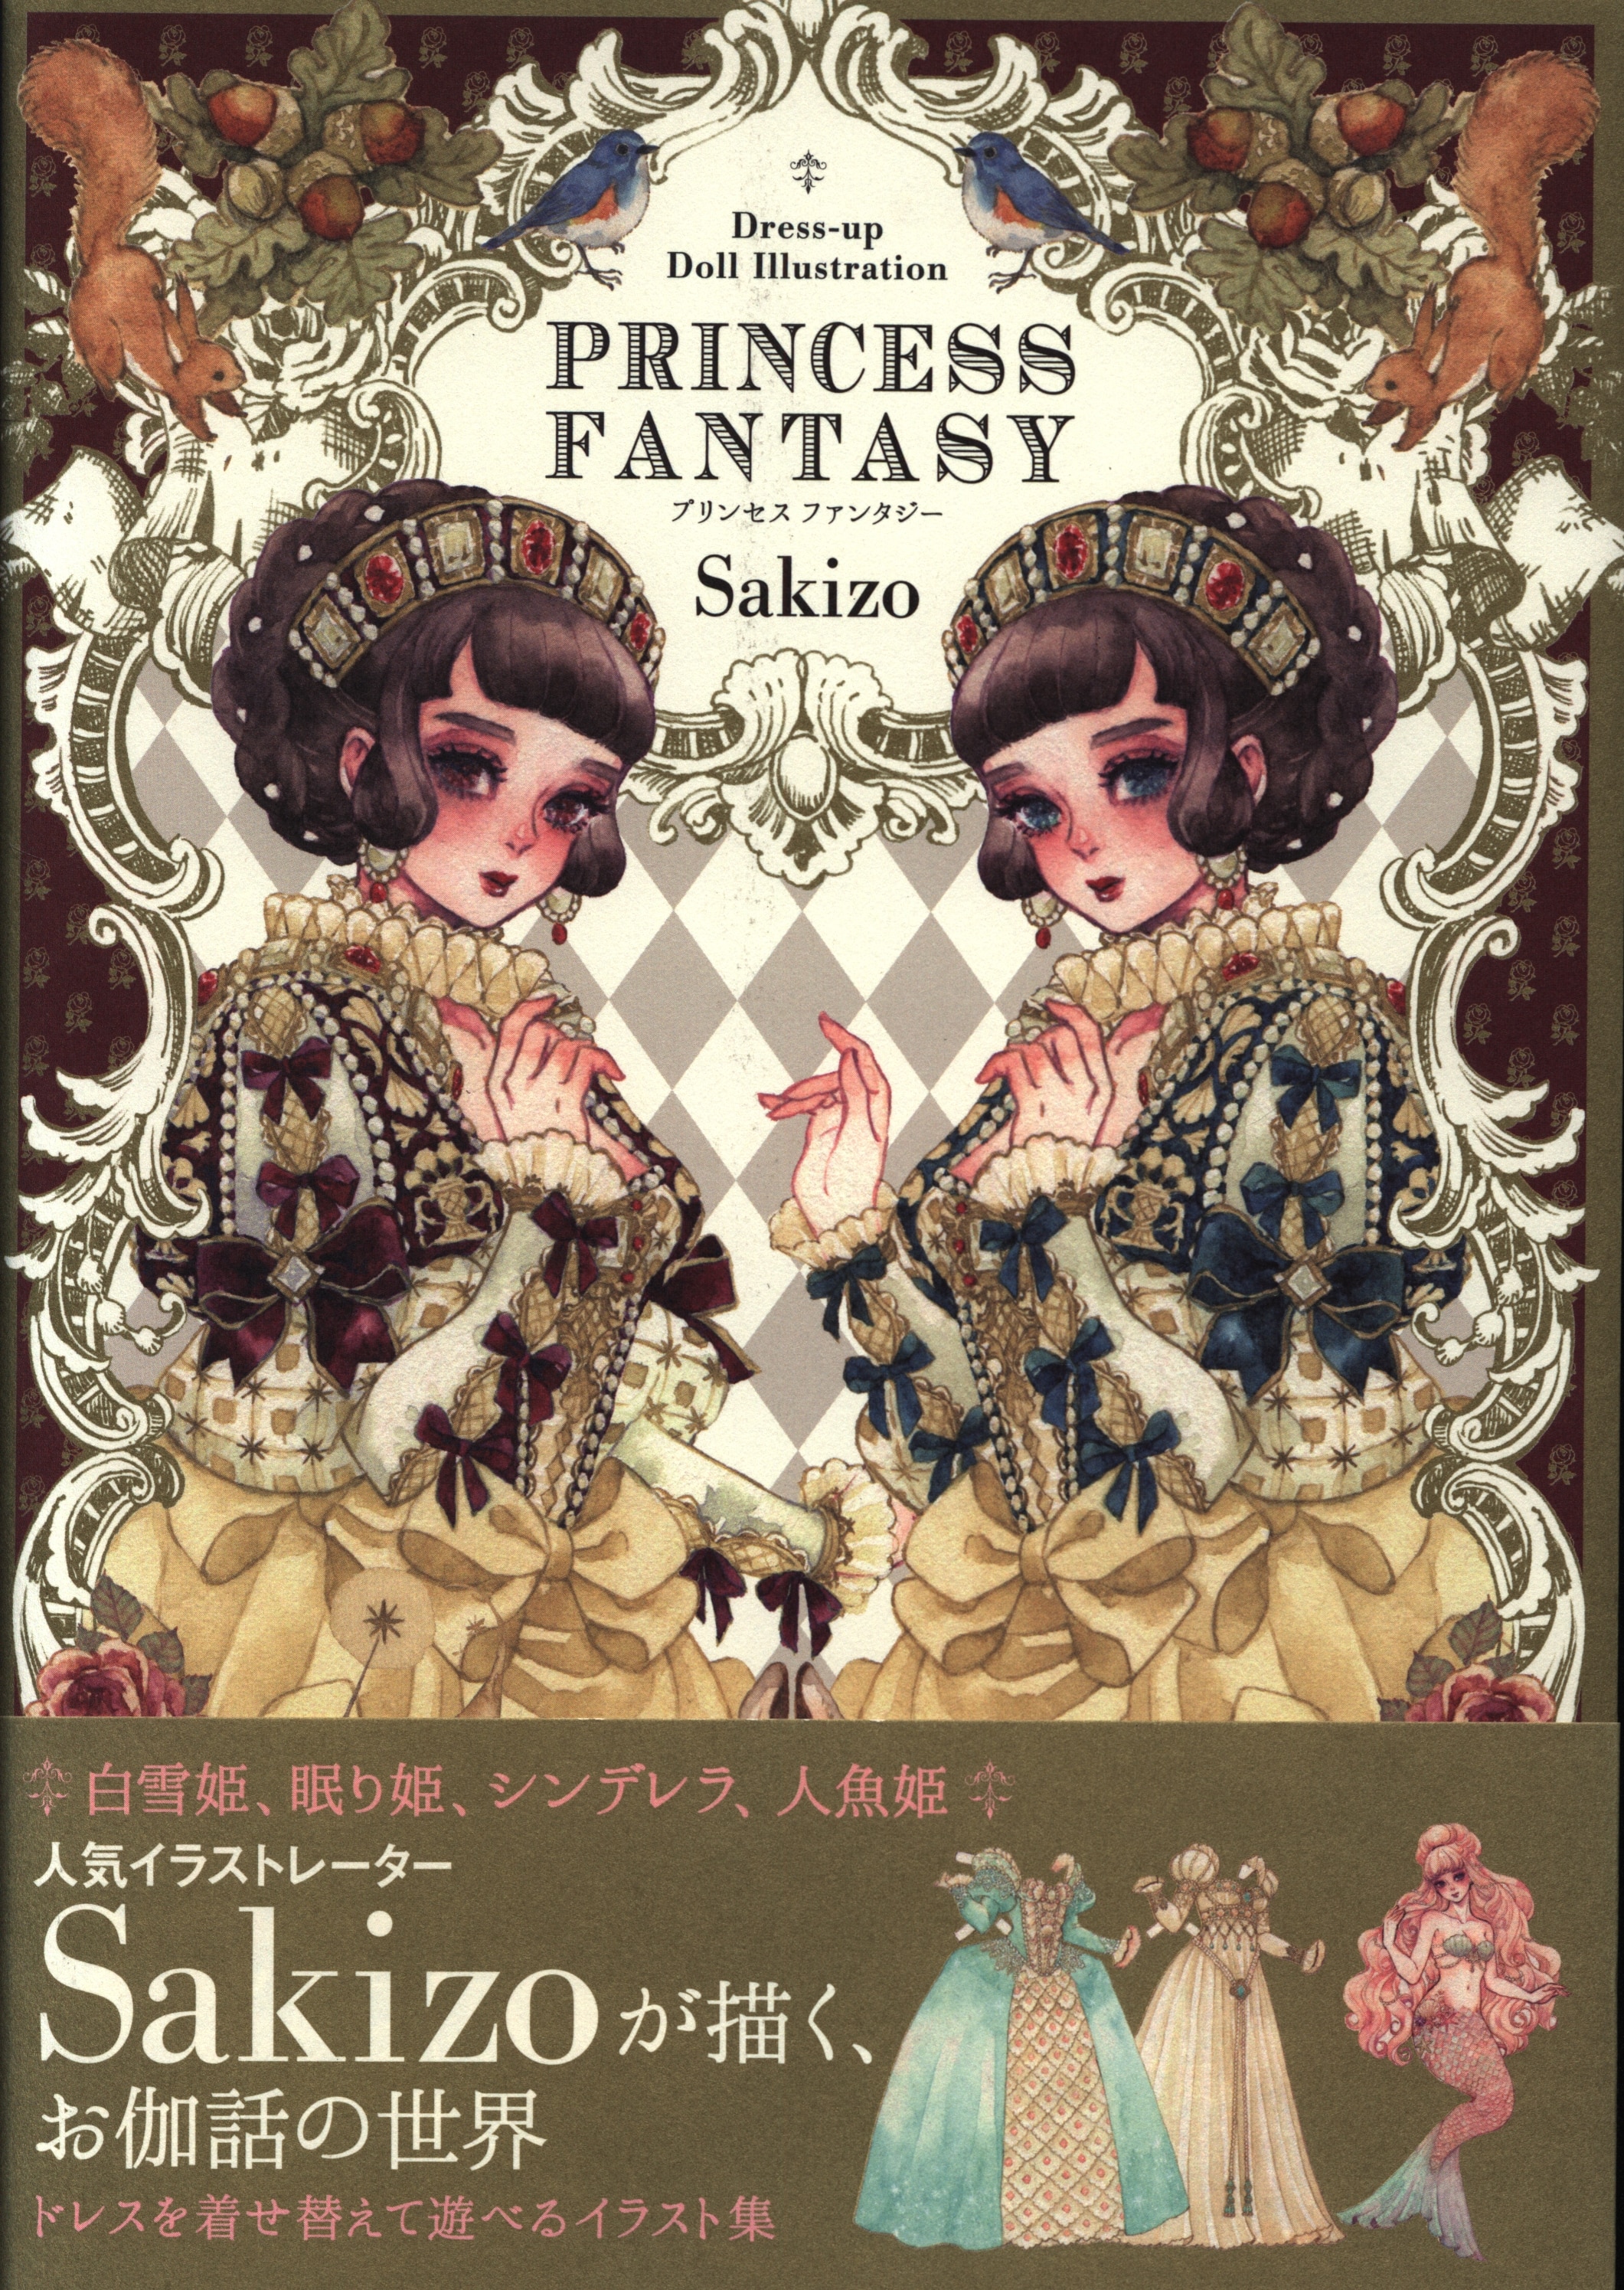 まんだらけ通販 翔泳社 Sakizo Dress Up Doll Illustration Princess Fantasy 帯付 名古屋店からの出品